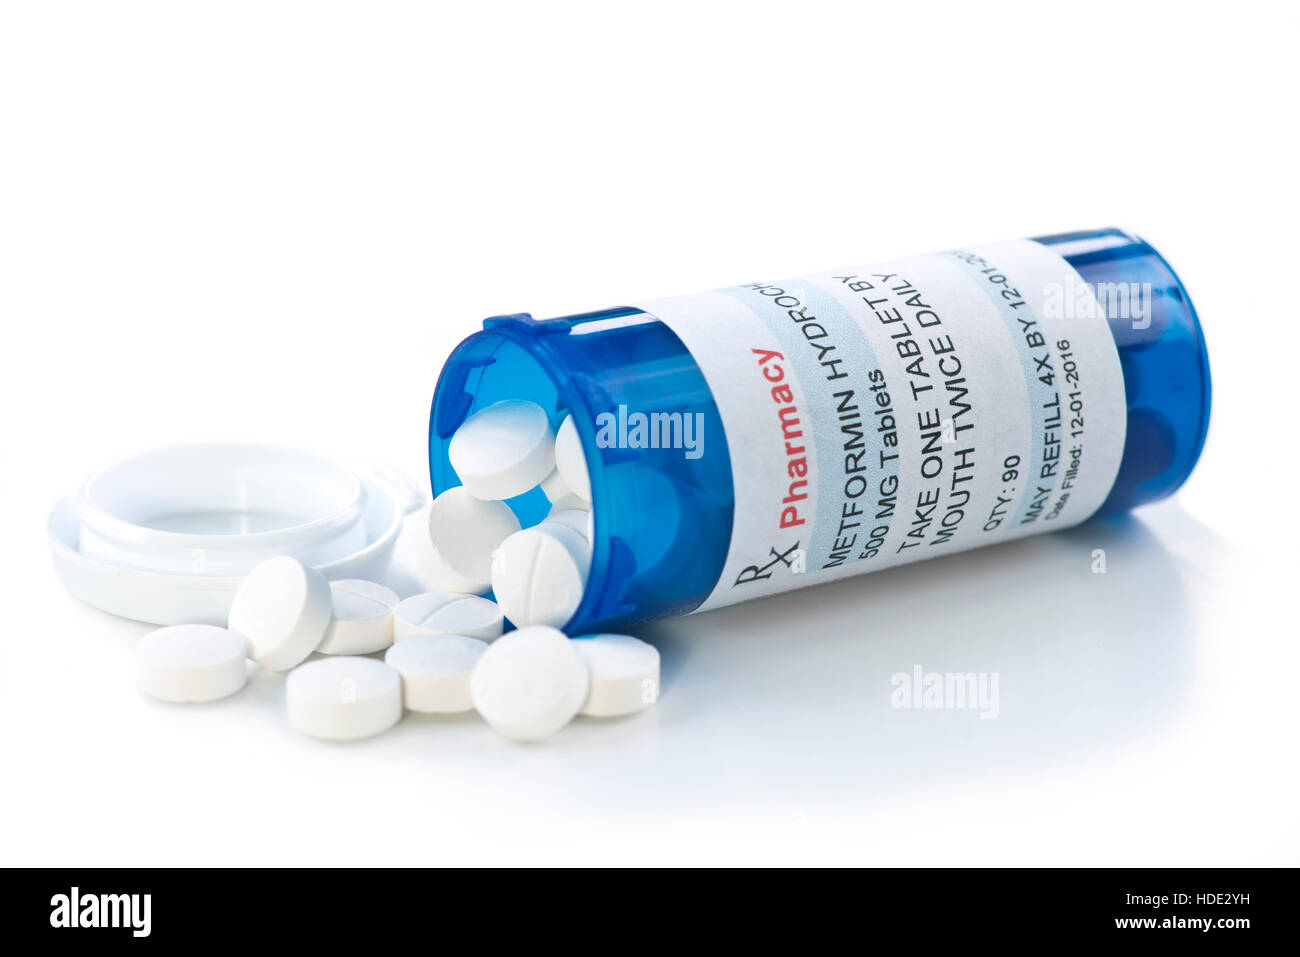 La metformina bottiglia di prescrizione. La metformina è un nome generico del farmaco e l'etichetta è stata creata dal fotografo. Foto Stock